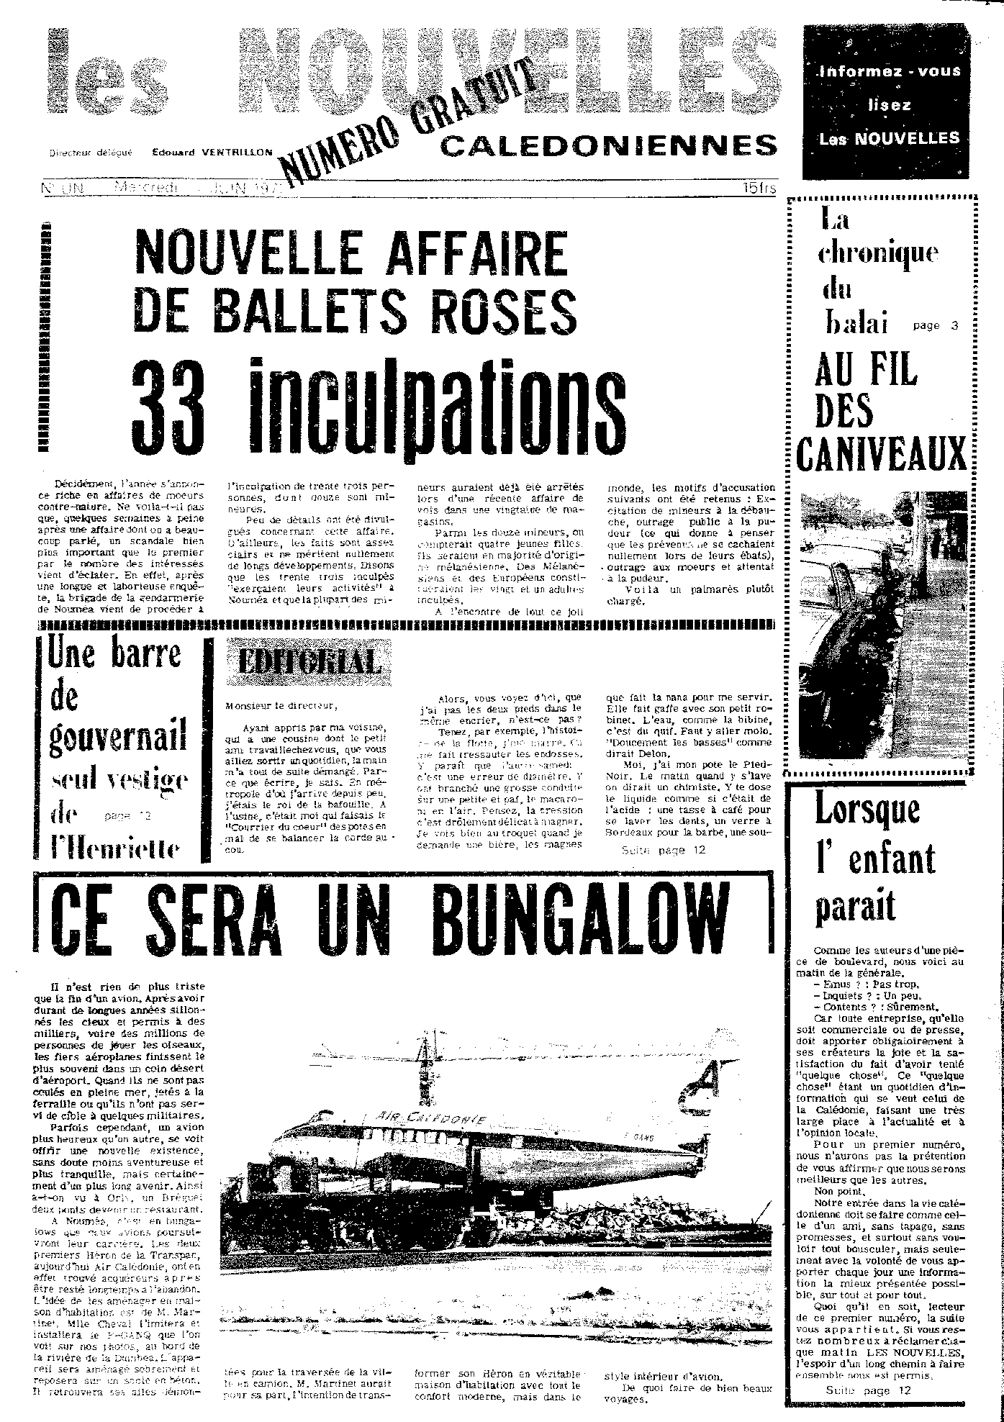 16 juin 1971. La Une du premier numéro des Nouvelles fait  état du projet de Madame Martinet visant à transformer  l’appareil en maison d’habitation. Il ne sera pas réalisé.